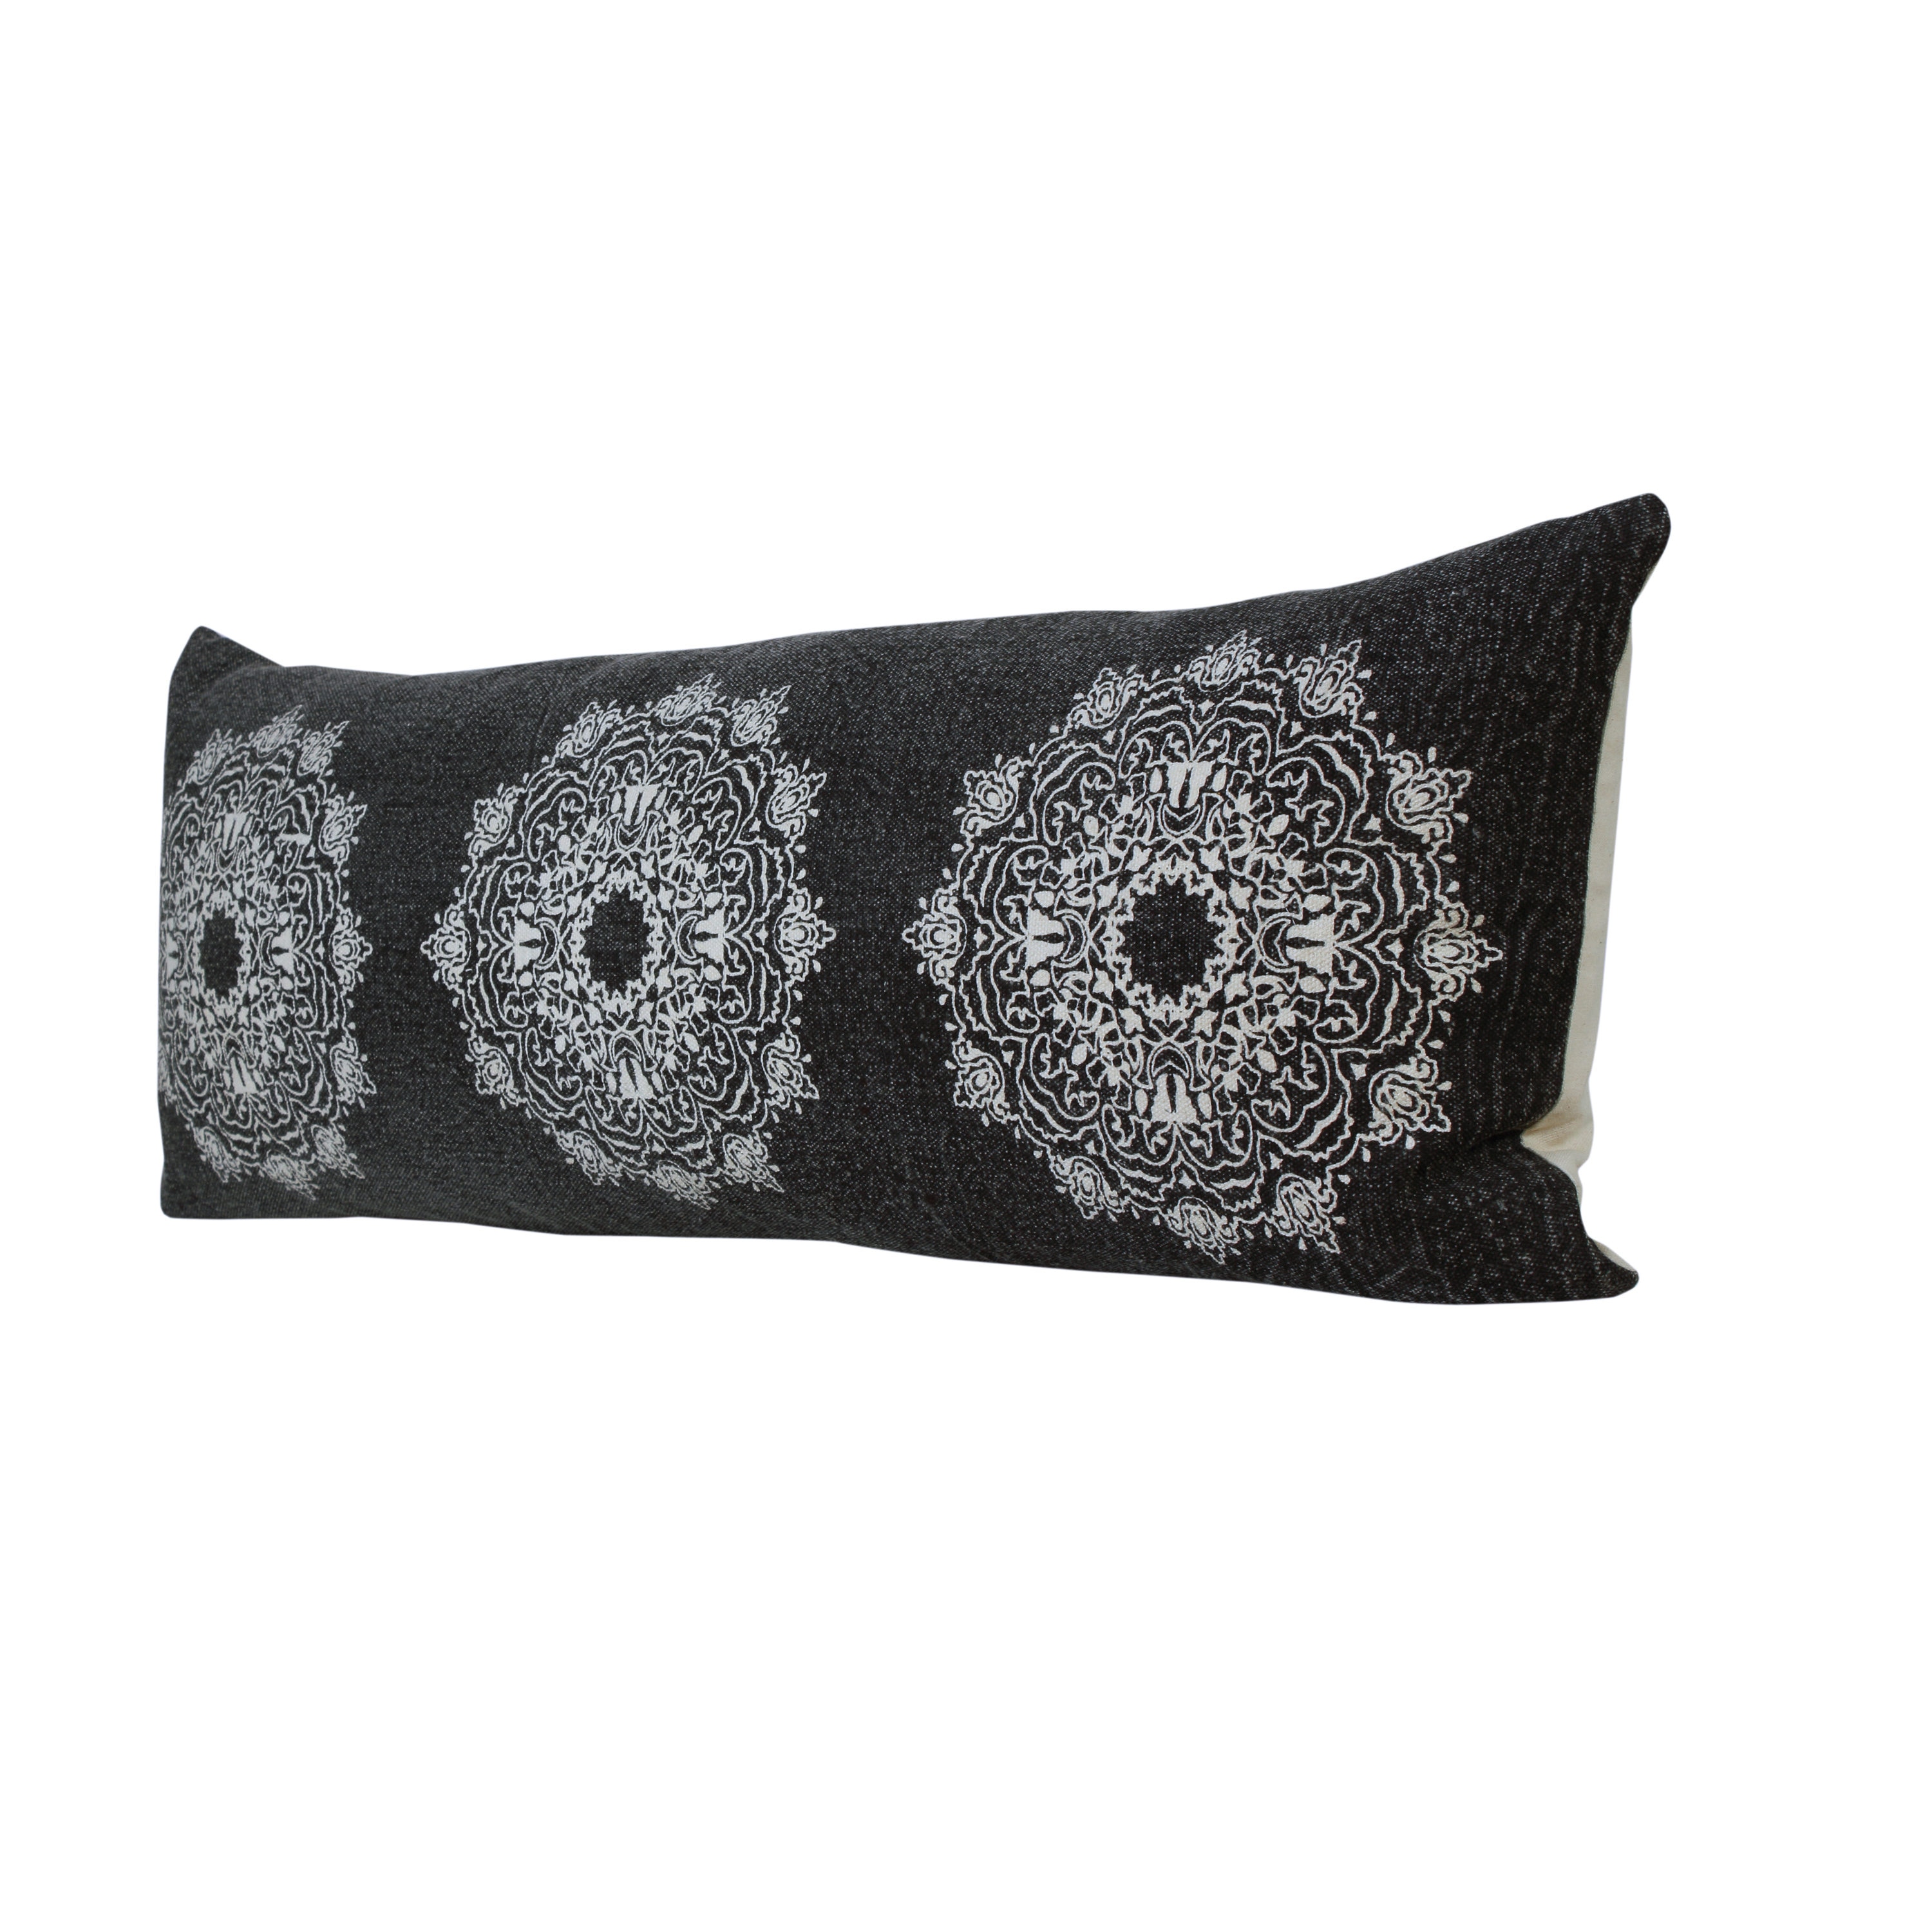 mandala pillow / Frida throw pillow colorful decorative pillow Embroidered pillow